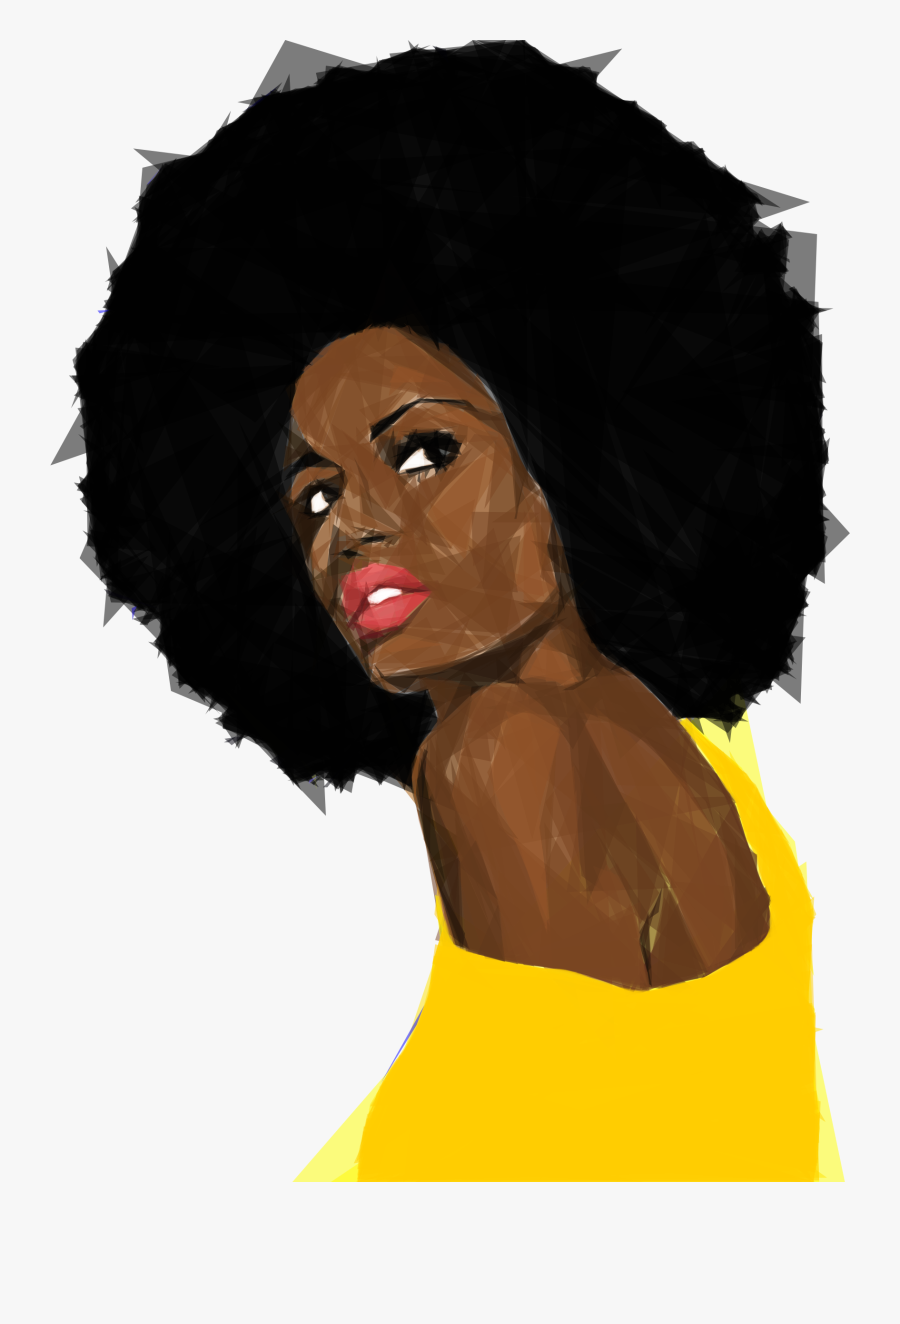 Beautiful Black Woman 2 Geometric No Background - Black Girl Transparent Background, Transparent Clipart